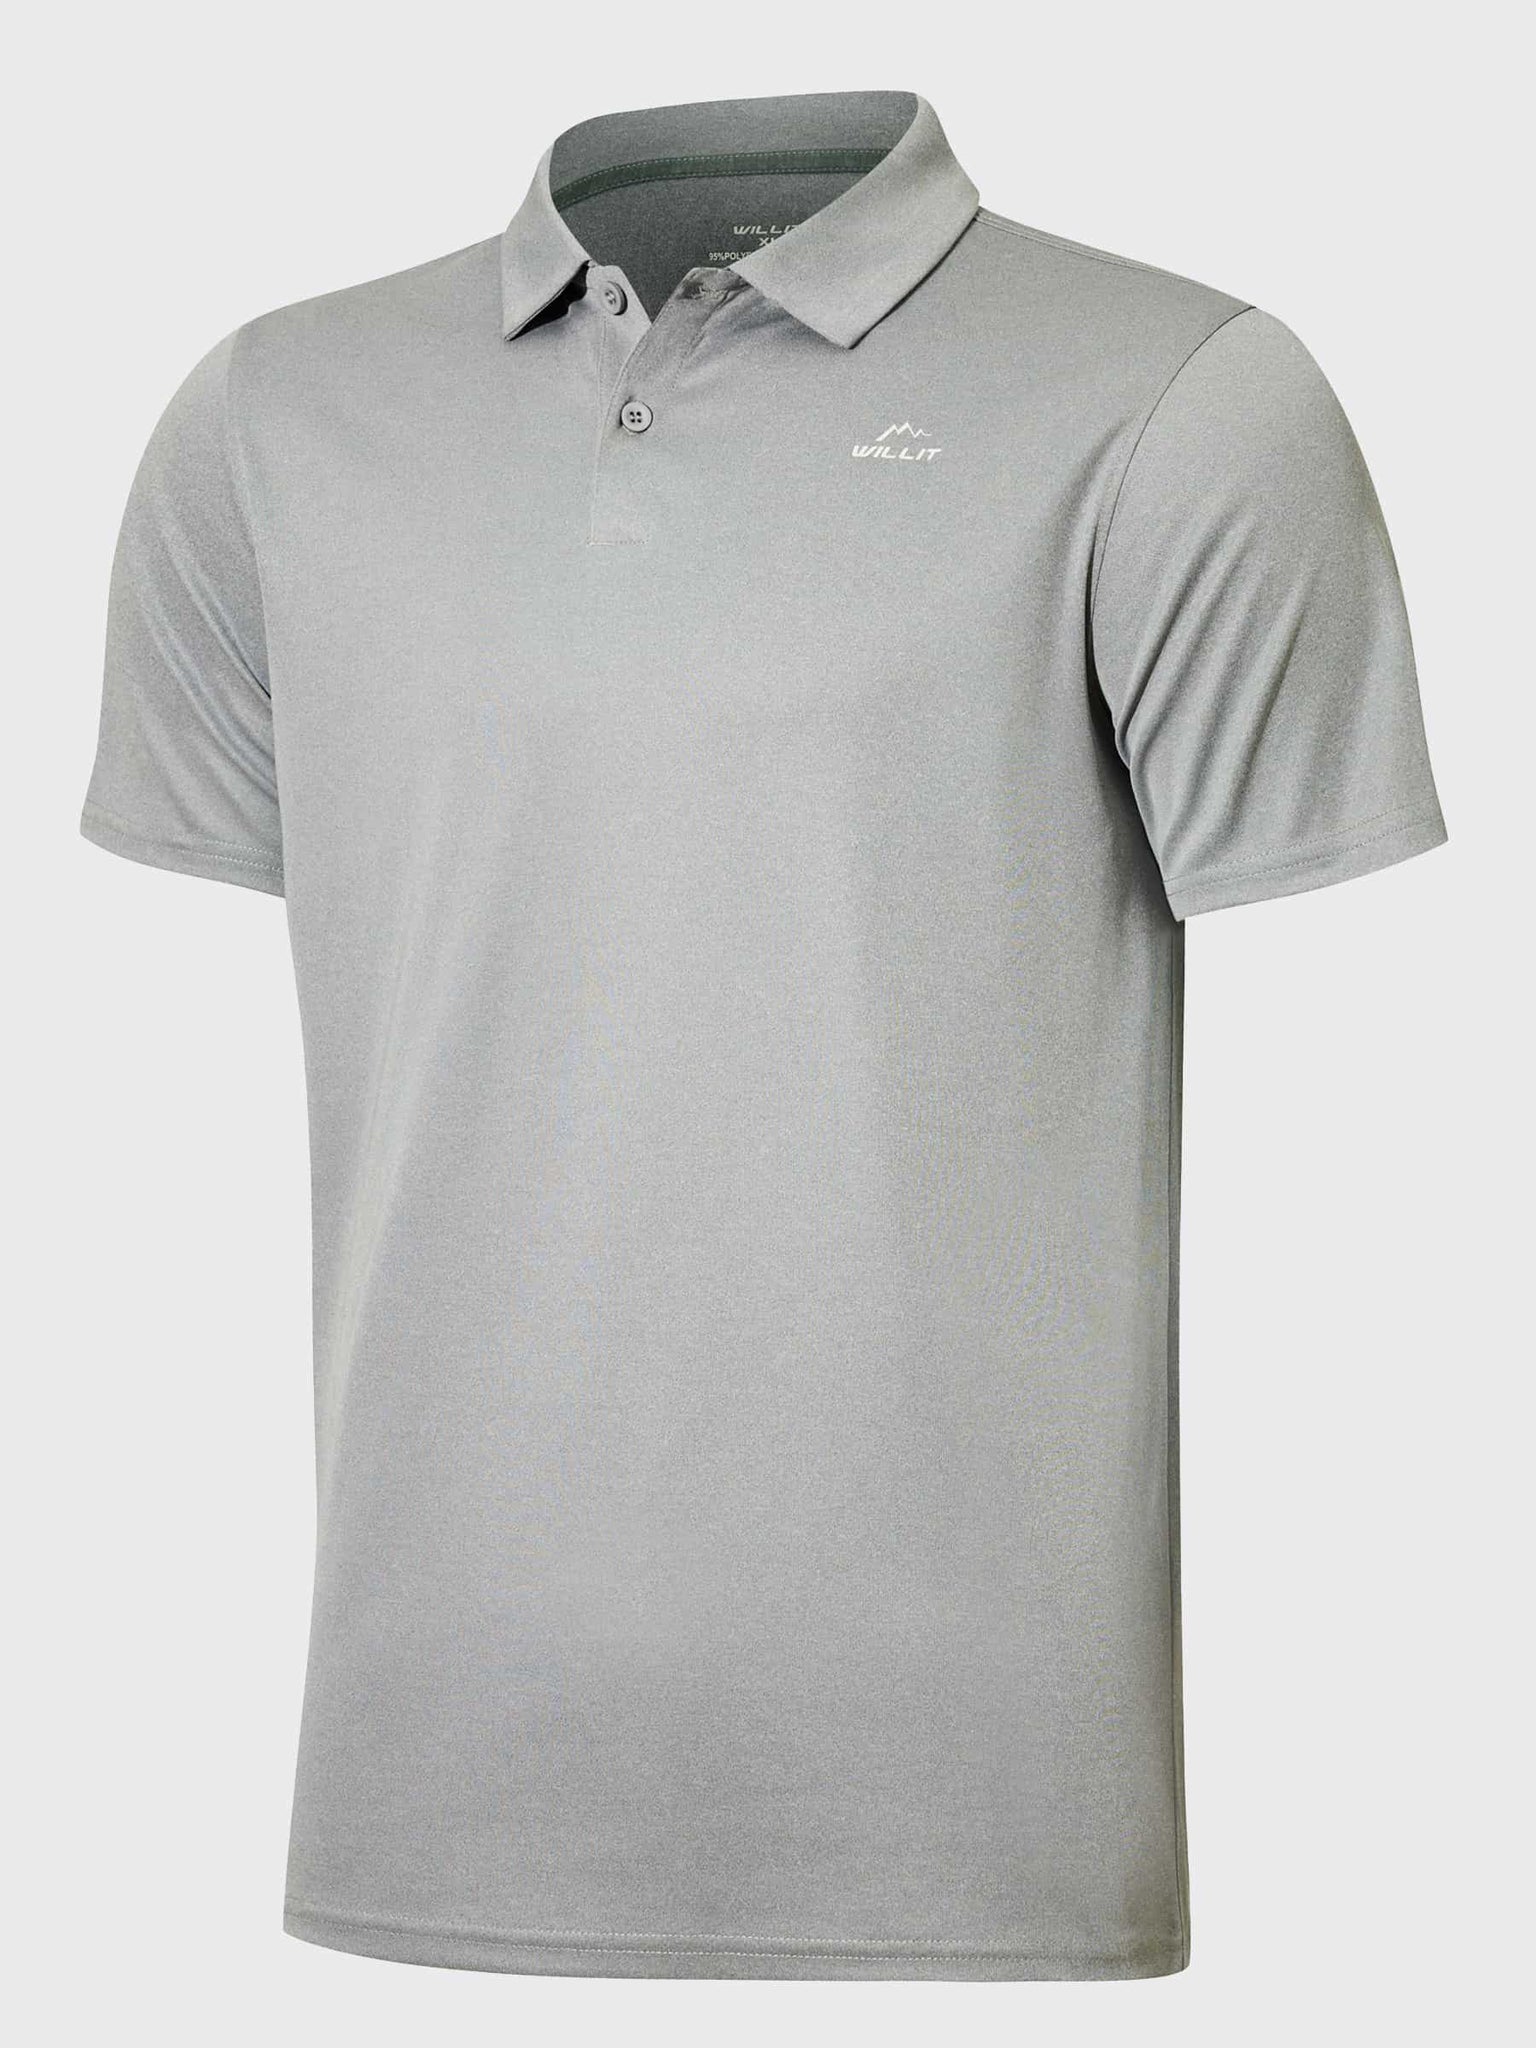 Youth Golf Polo Sun Shirts_Gray_laydown1